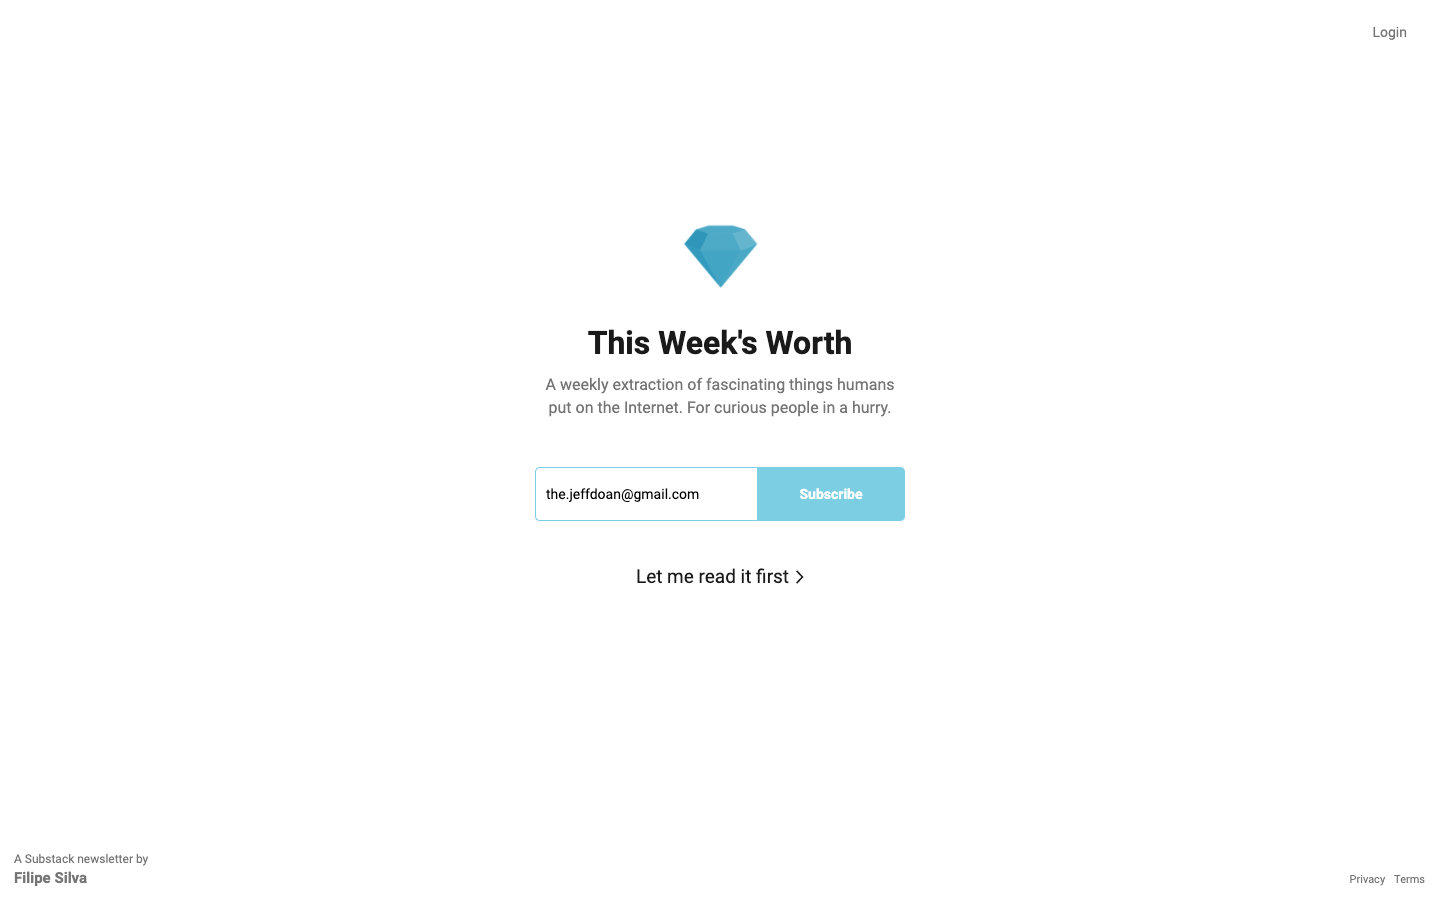 This Week’s Worth homepage